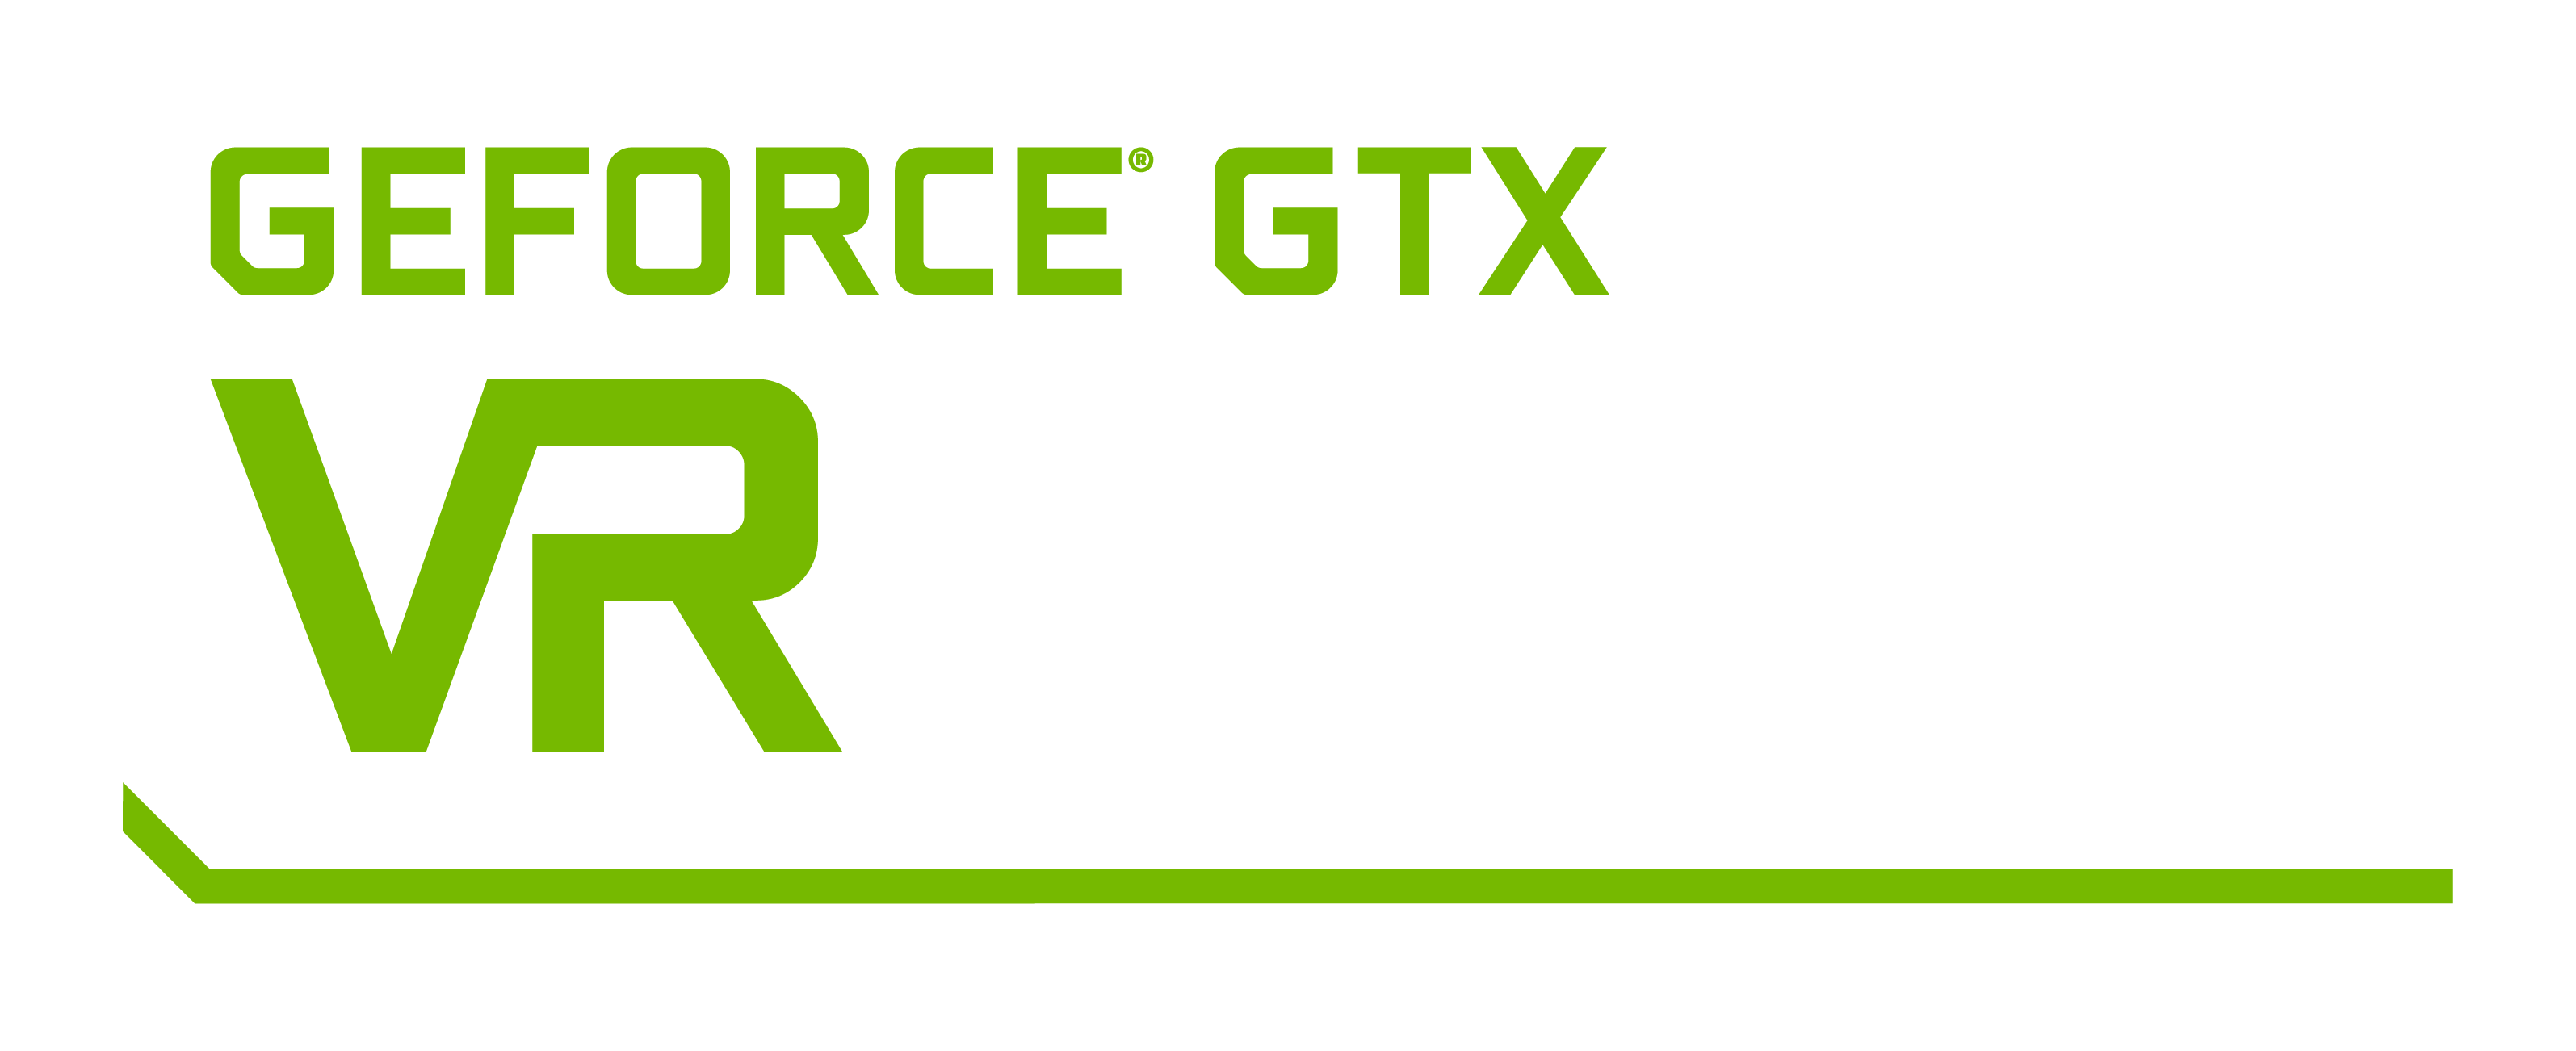 GeForce GTX VR Ready logo